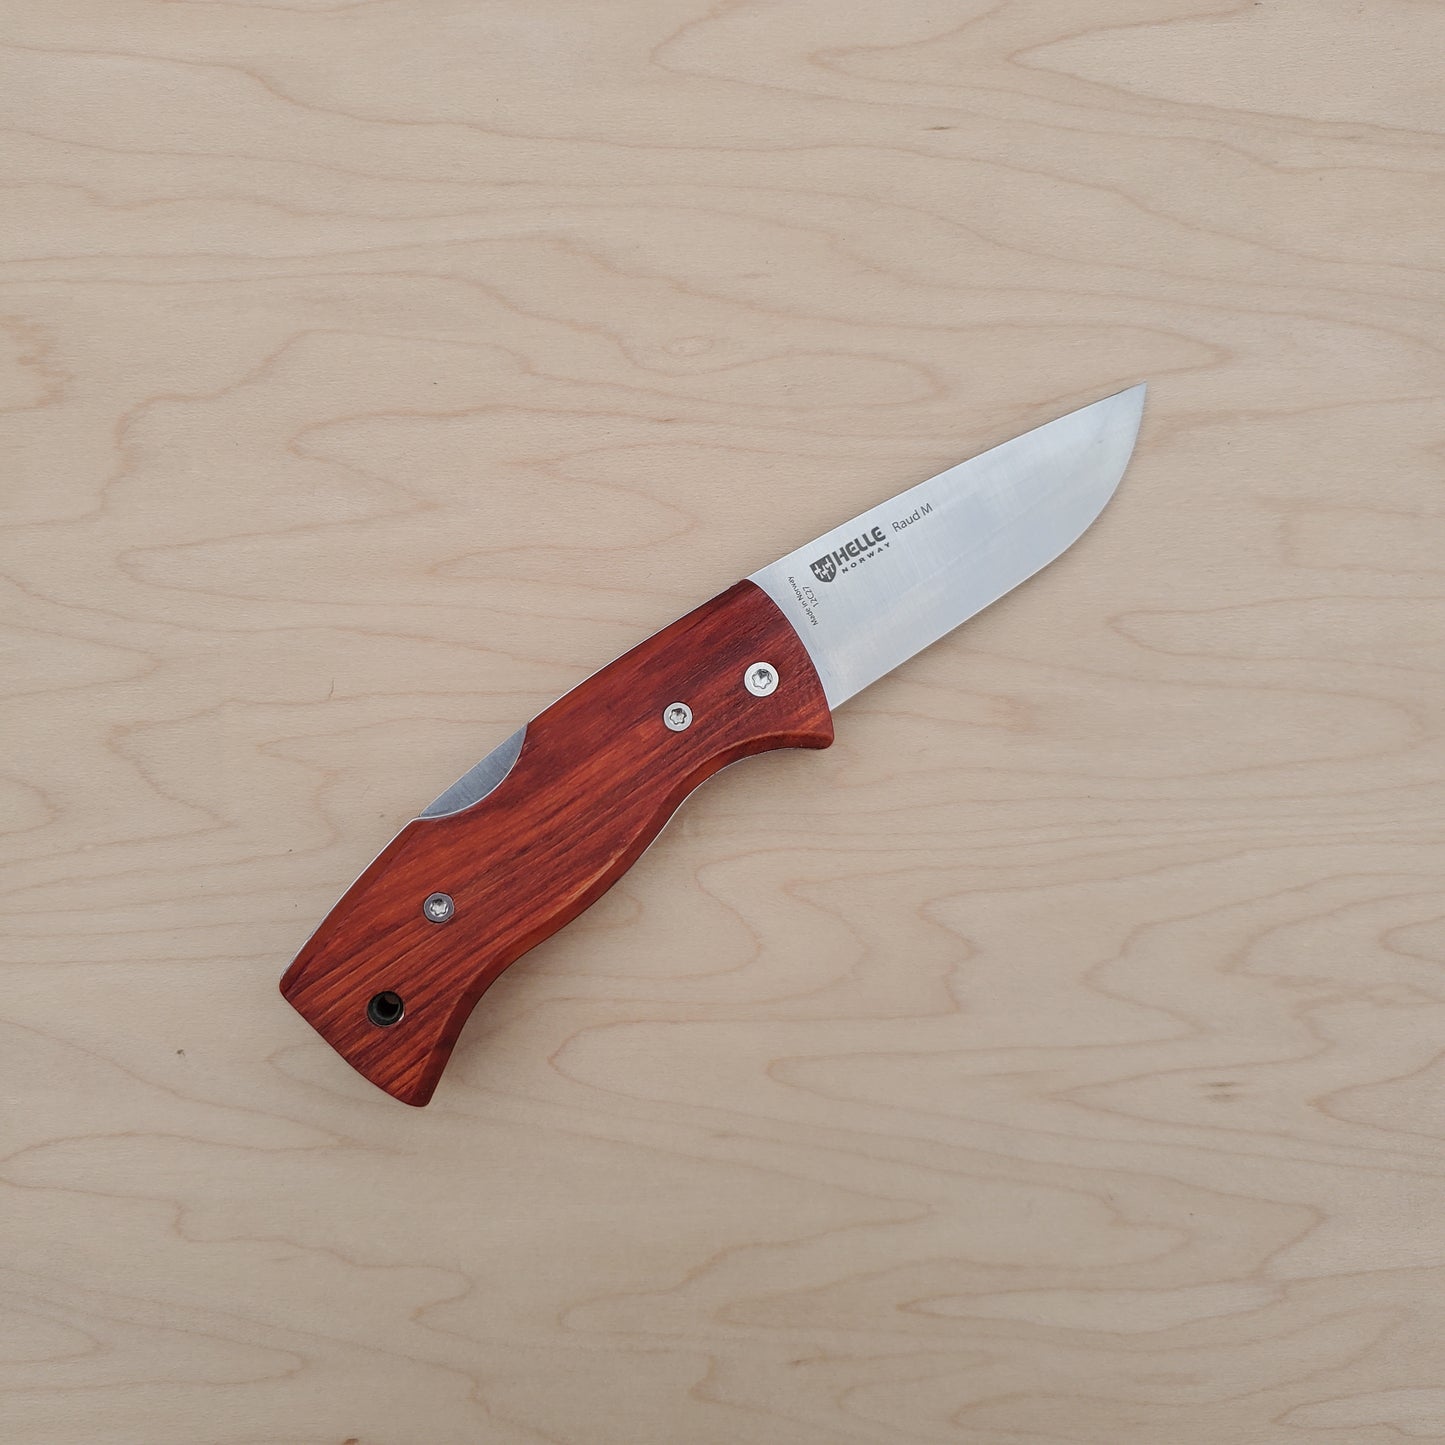 Helle Raud M 2.75" Folding Knife